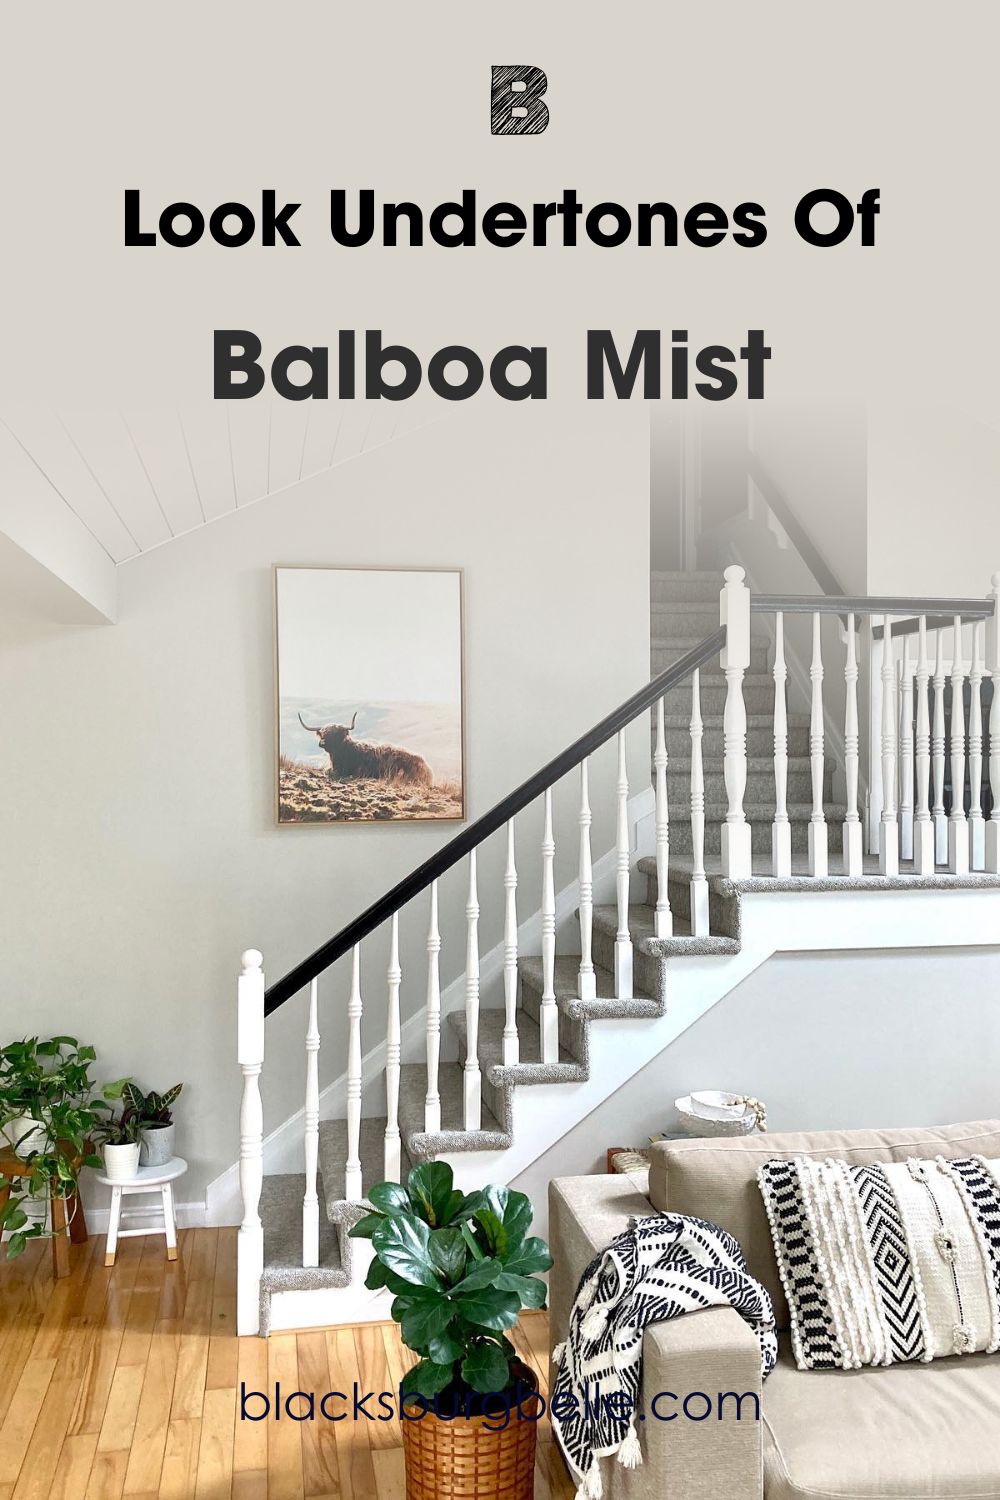 A Closer Look at Balboa Mist’s Undertones 